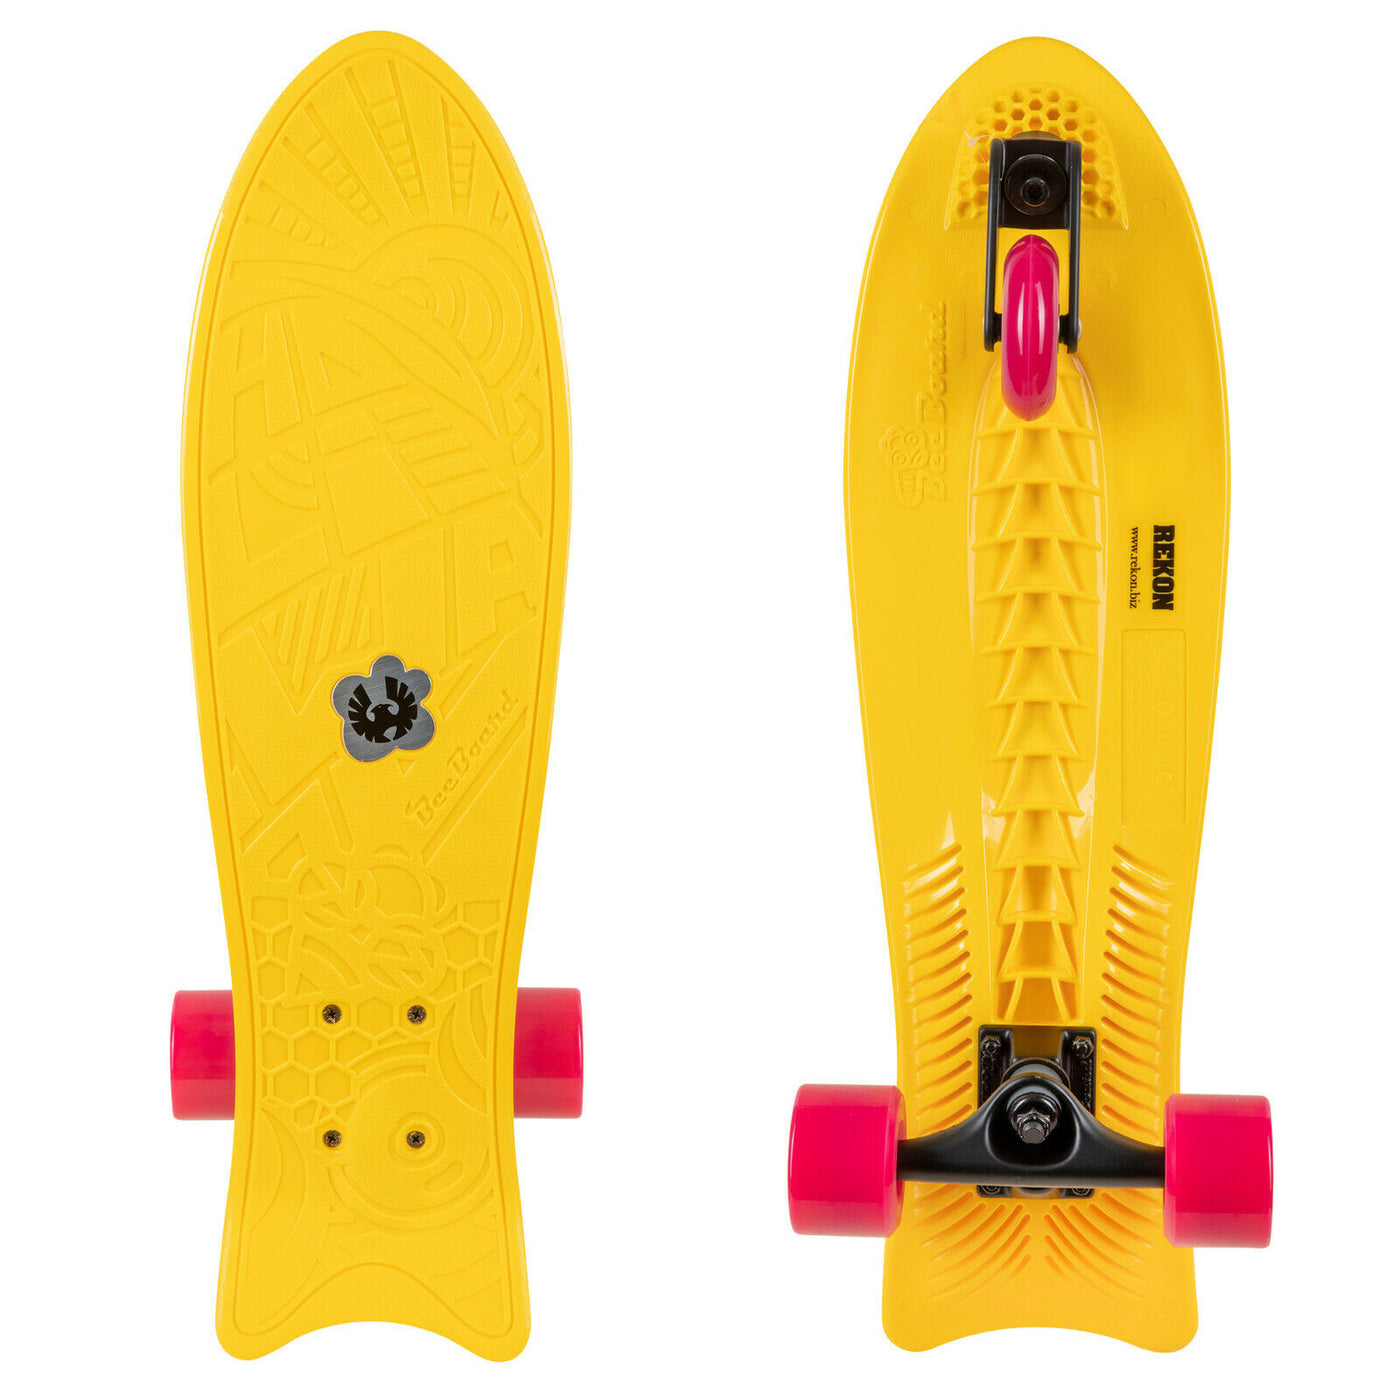 Snoep opgraven man Rekon 24" x 7" Bee Board Wave Skateboard with 3 Wheels – Shop709.com